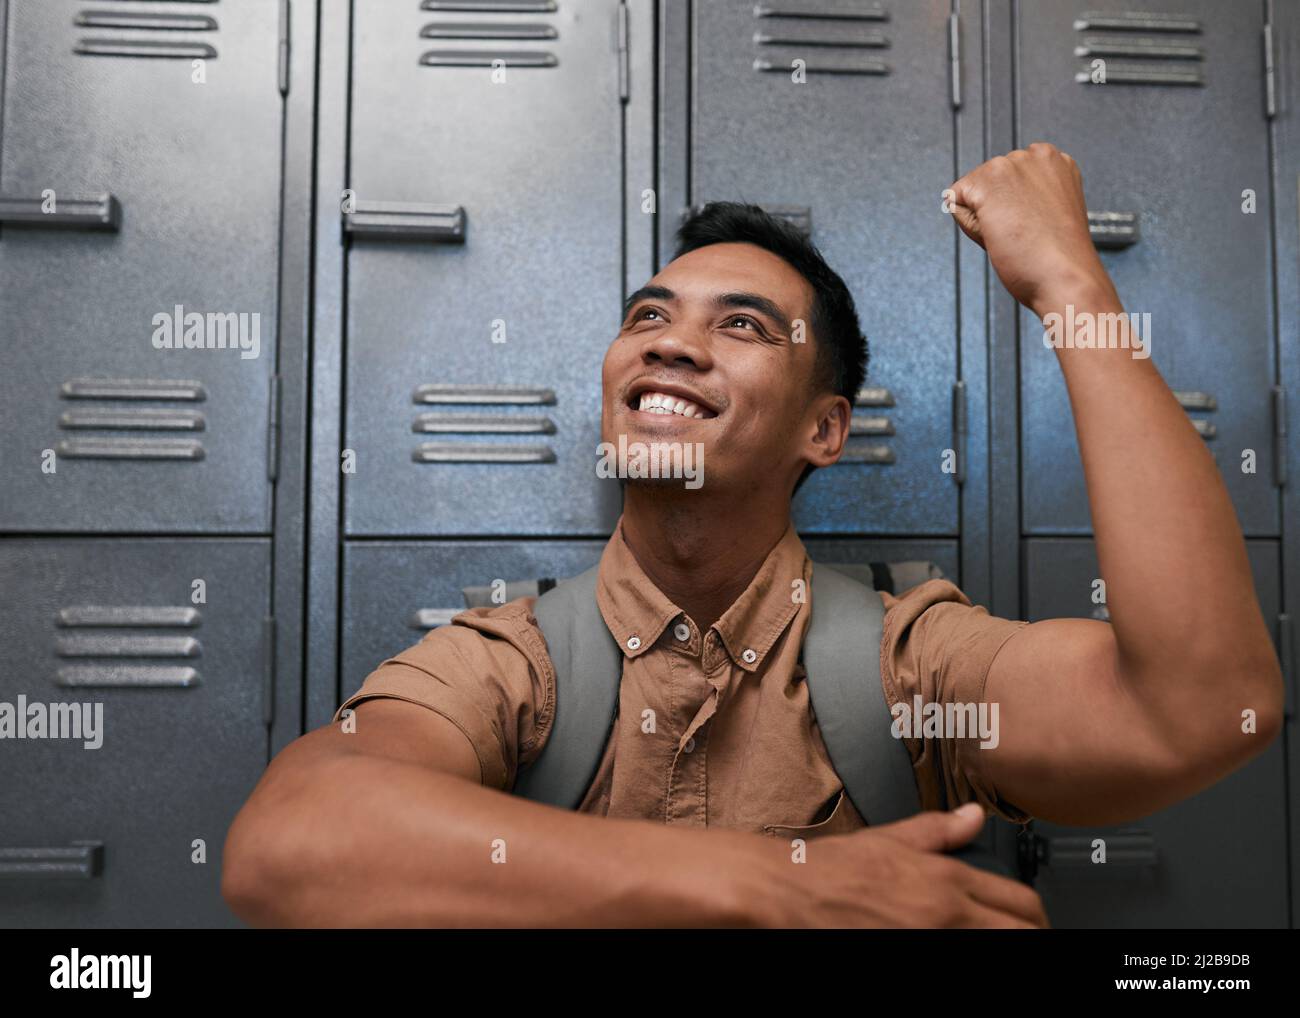 Ein junger südostasiatischer Student feiert vor den Schließfächern des Campus lächelnd Stockfoto